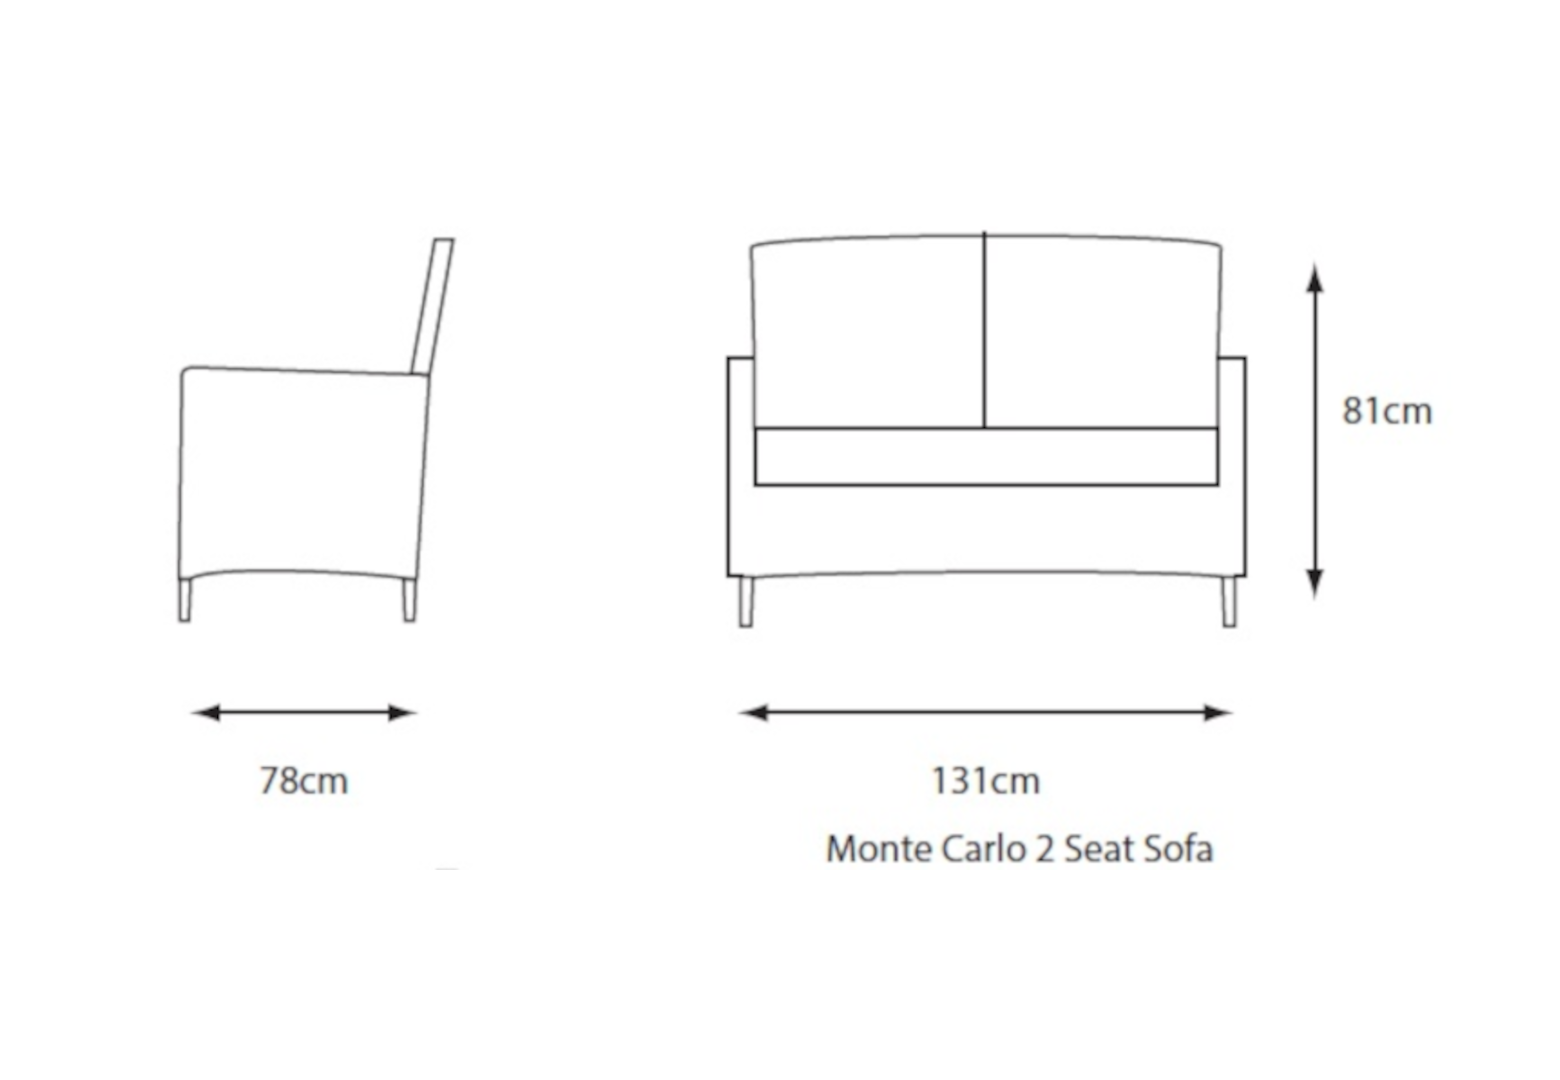 2 Seat Sofa - dimensions image